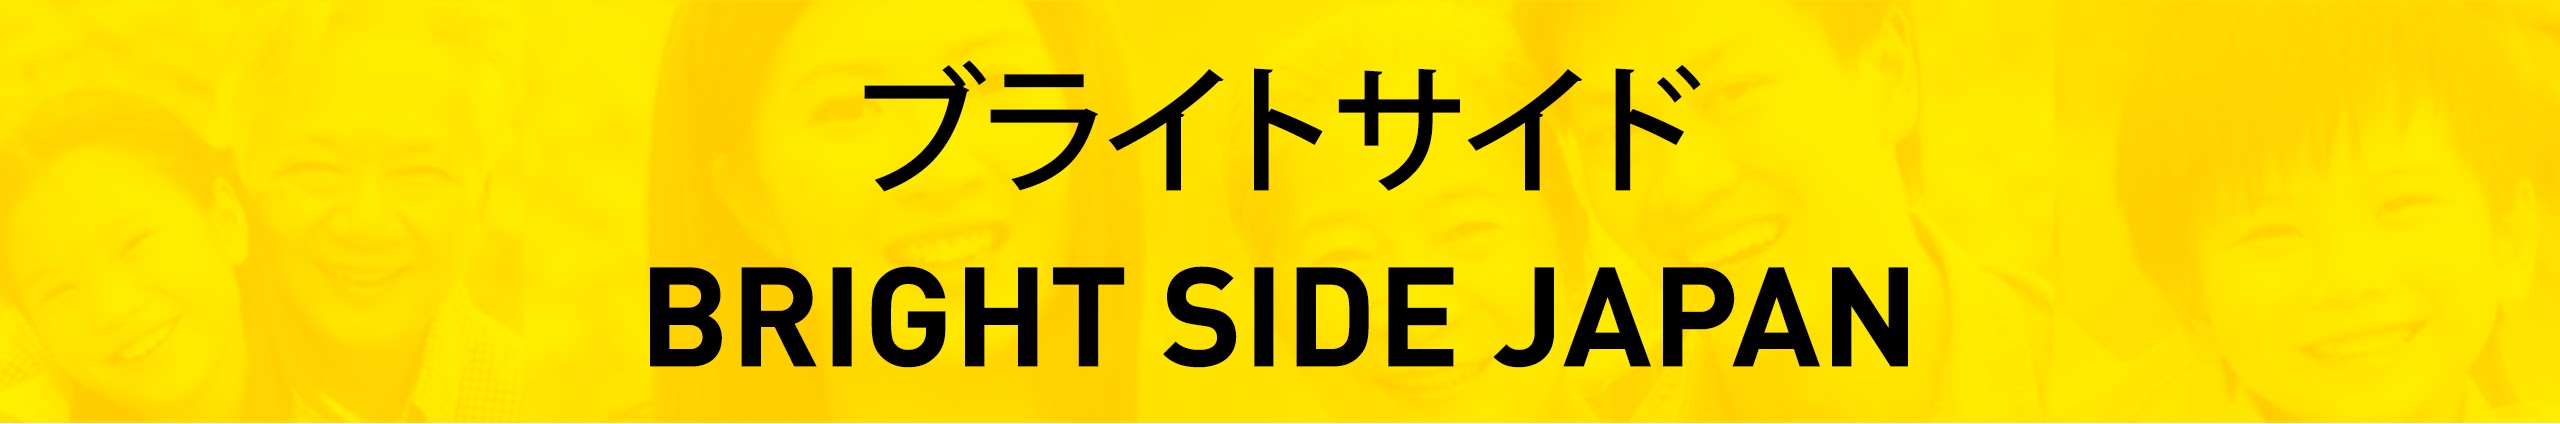 ブライトサイド | Bright Side Japan